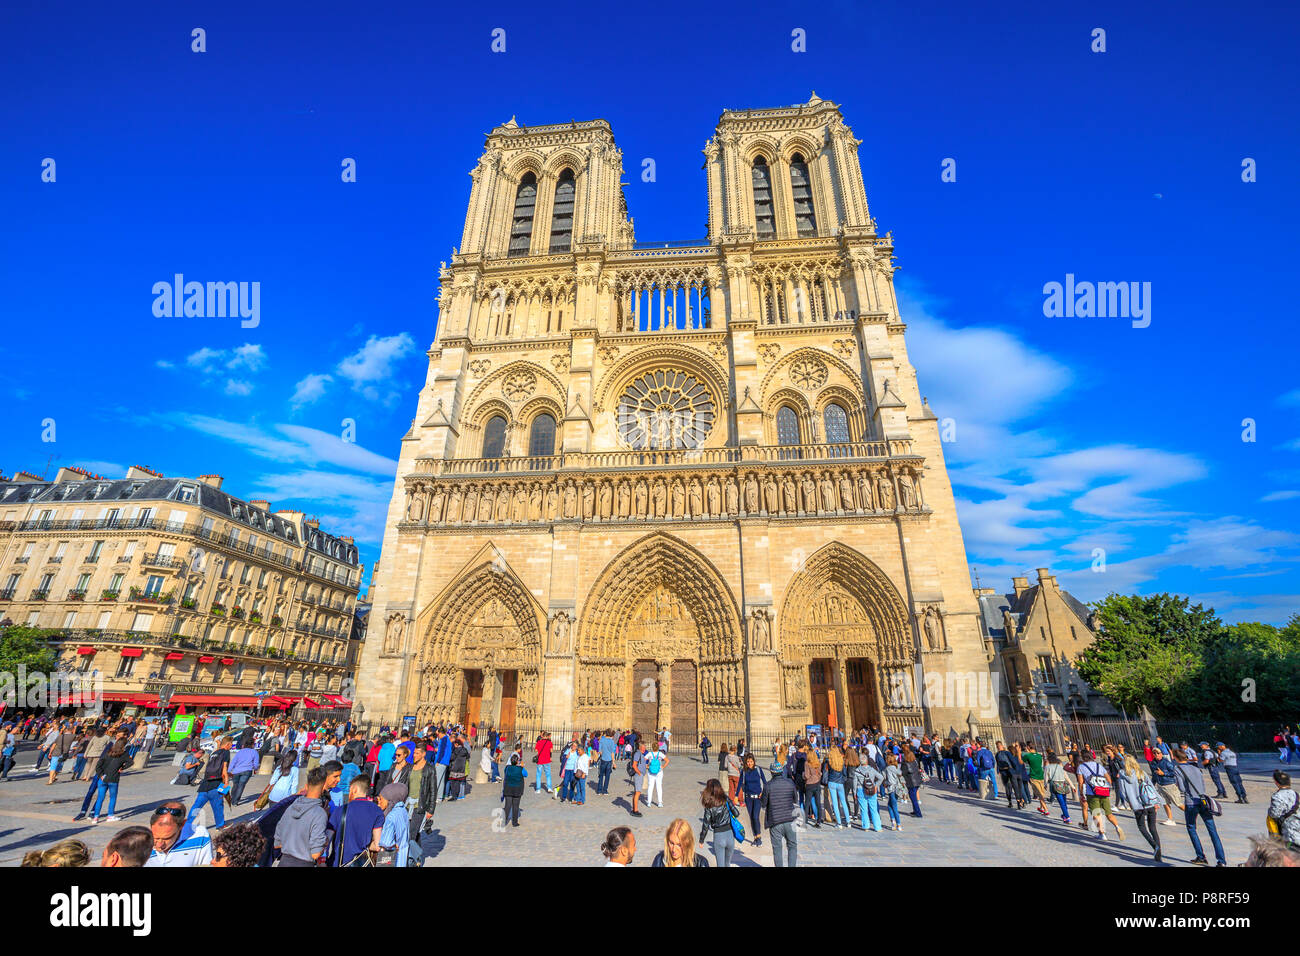 Paris, Frankreich, 1. Juli 2017: Viele Touristen in eckigen von Notre Dame de Paris, der Ile de la Cite, während Sie warten die berühmte gotische Kirche zu besuchen. Sonnigen Tag, blauer Himmel. Die Fassade der Kathedrale von Paris. Stockfoto